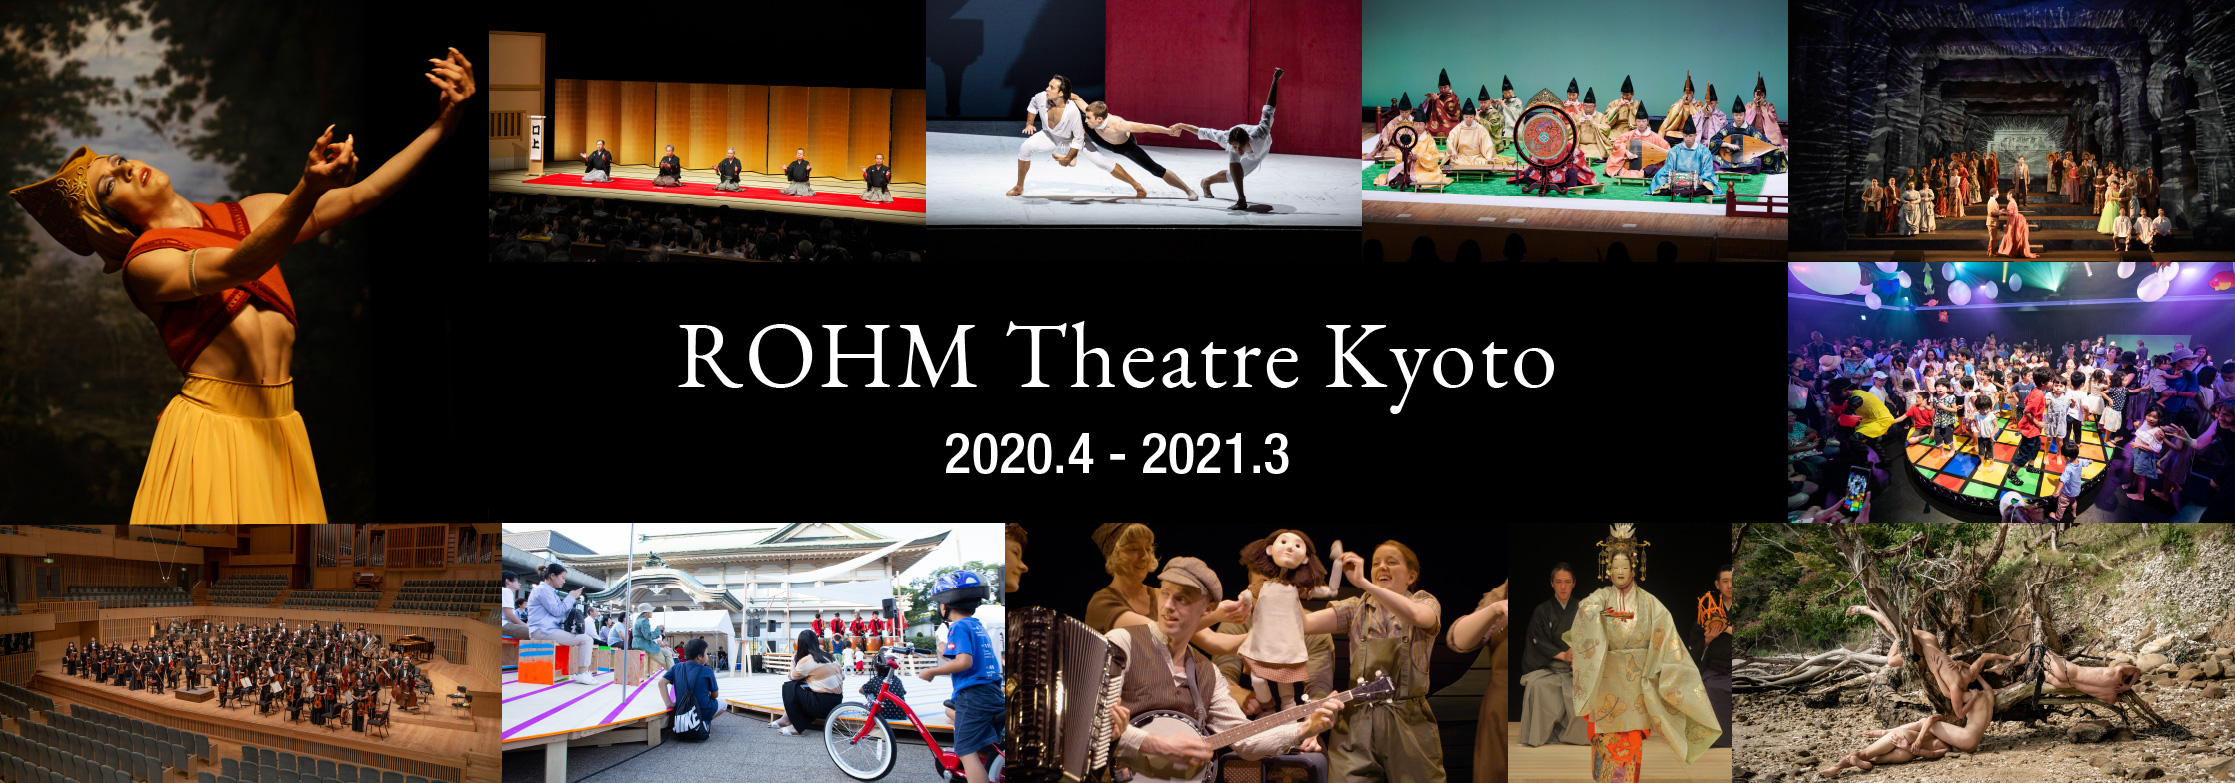 ROHM Theatre Kyoto Program 2020